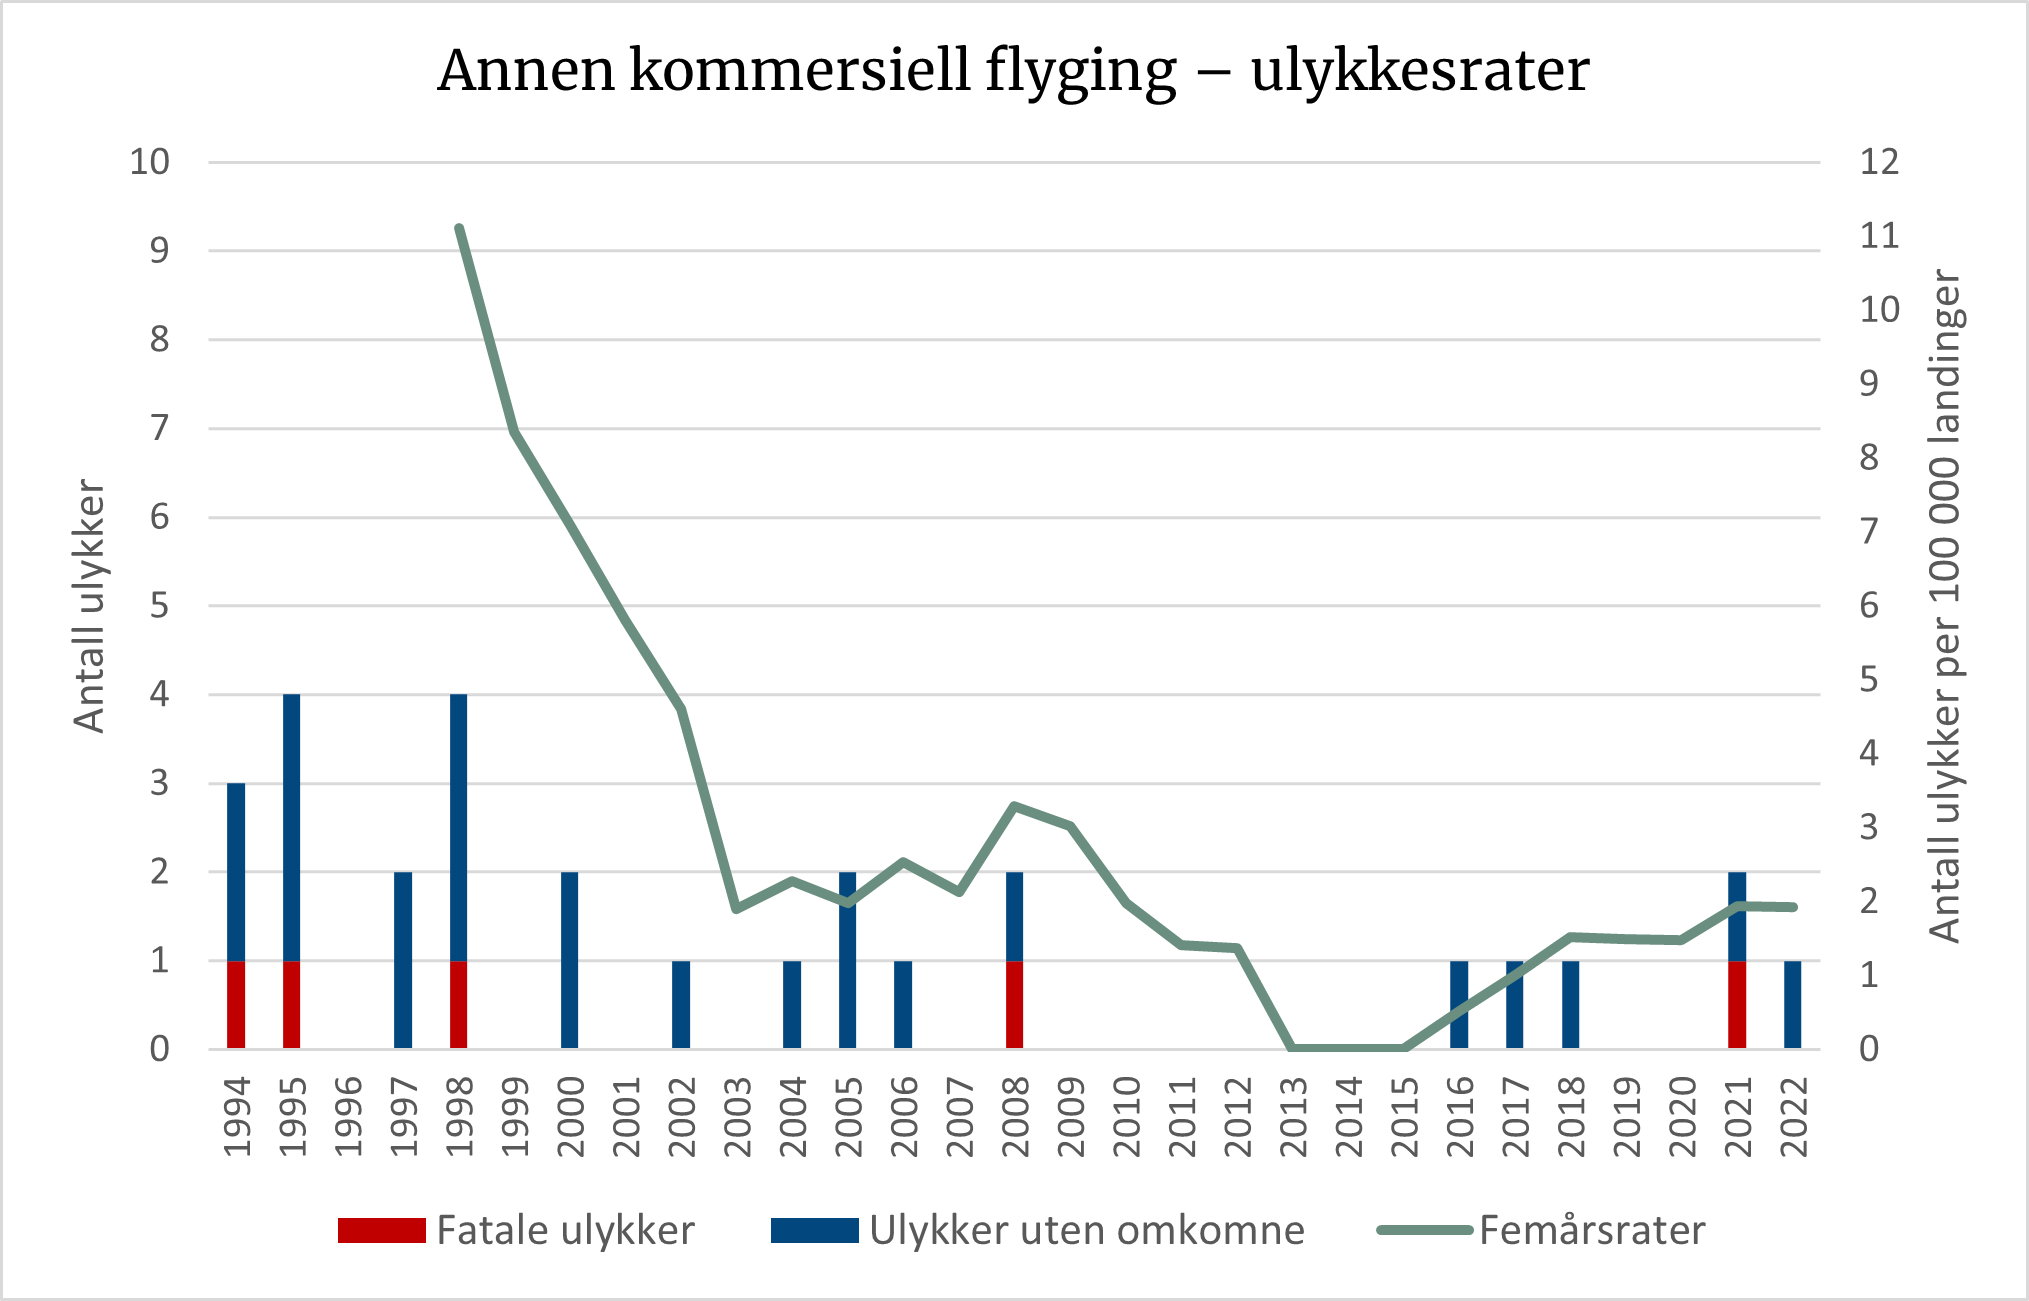 Diagrammet viser utviklingen i antall ulykker og femårs ulykkesrater innen annen kommersiell flyging med fly. Ulykkesraten er langt bedre enn for 20 år siden, og var en periode helt nede på null, men med en liten oppgang de senere årene.